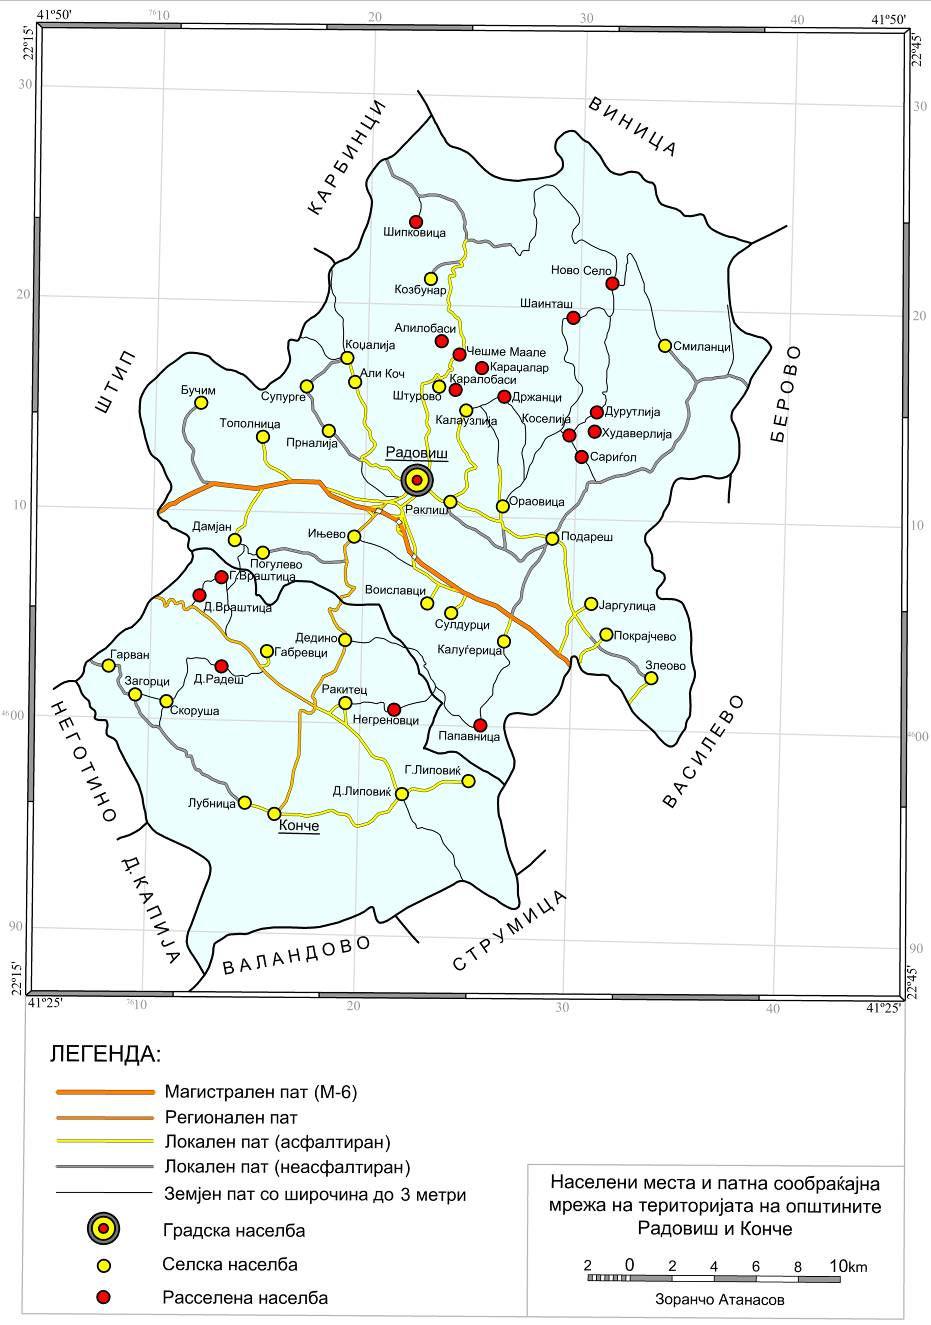 Географски разгледи (44-45) 65-77 (2011) 75 Слика 2: Картографски приказ на патната сообраќајна мрежа на општините Радовиш и Конче.